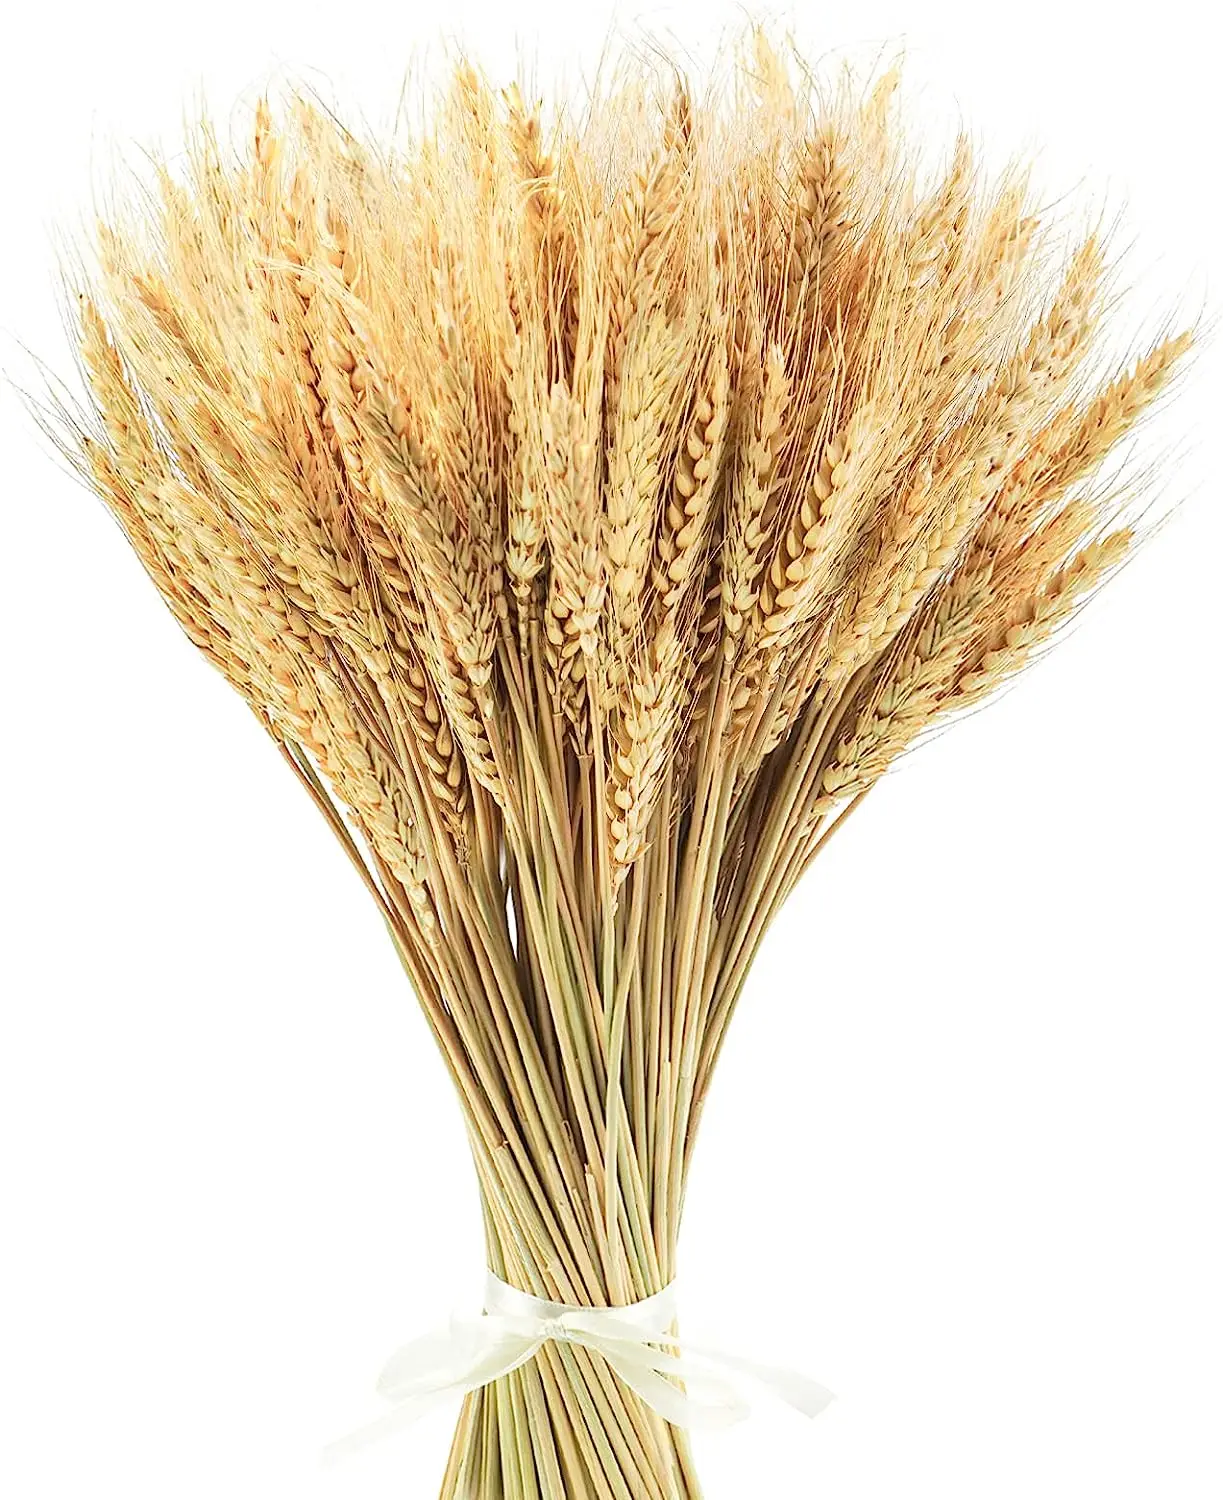 

Высушенные стебли пшеницы 17,7 дюйма-идеально подходят для рождества, осени, благодарения, сбора 100% натуральной пшеницы, свадьбы, богемского фермерского дома